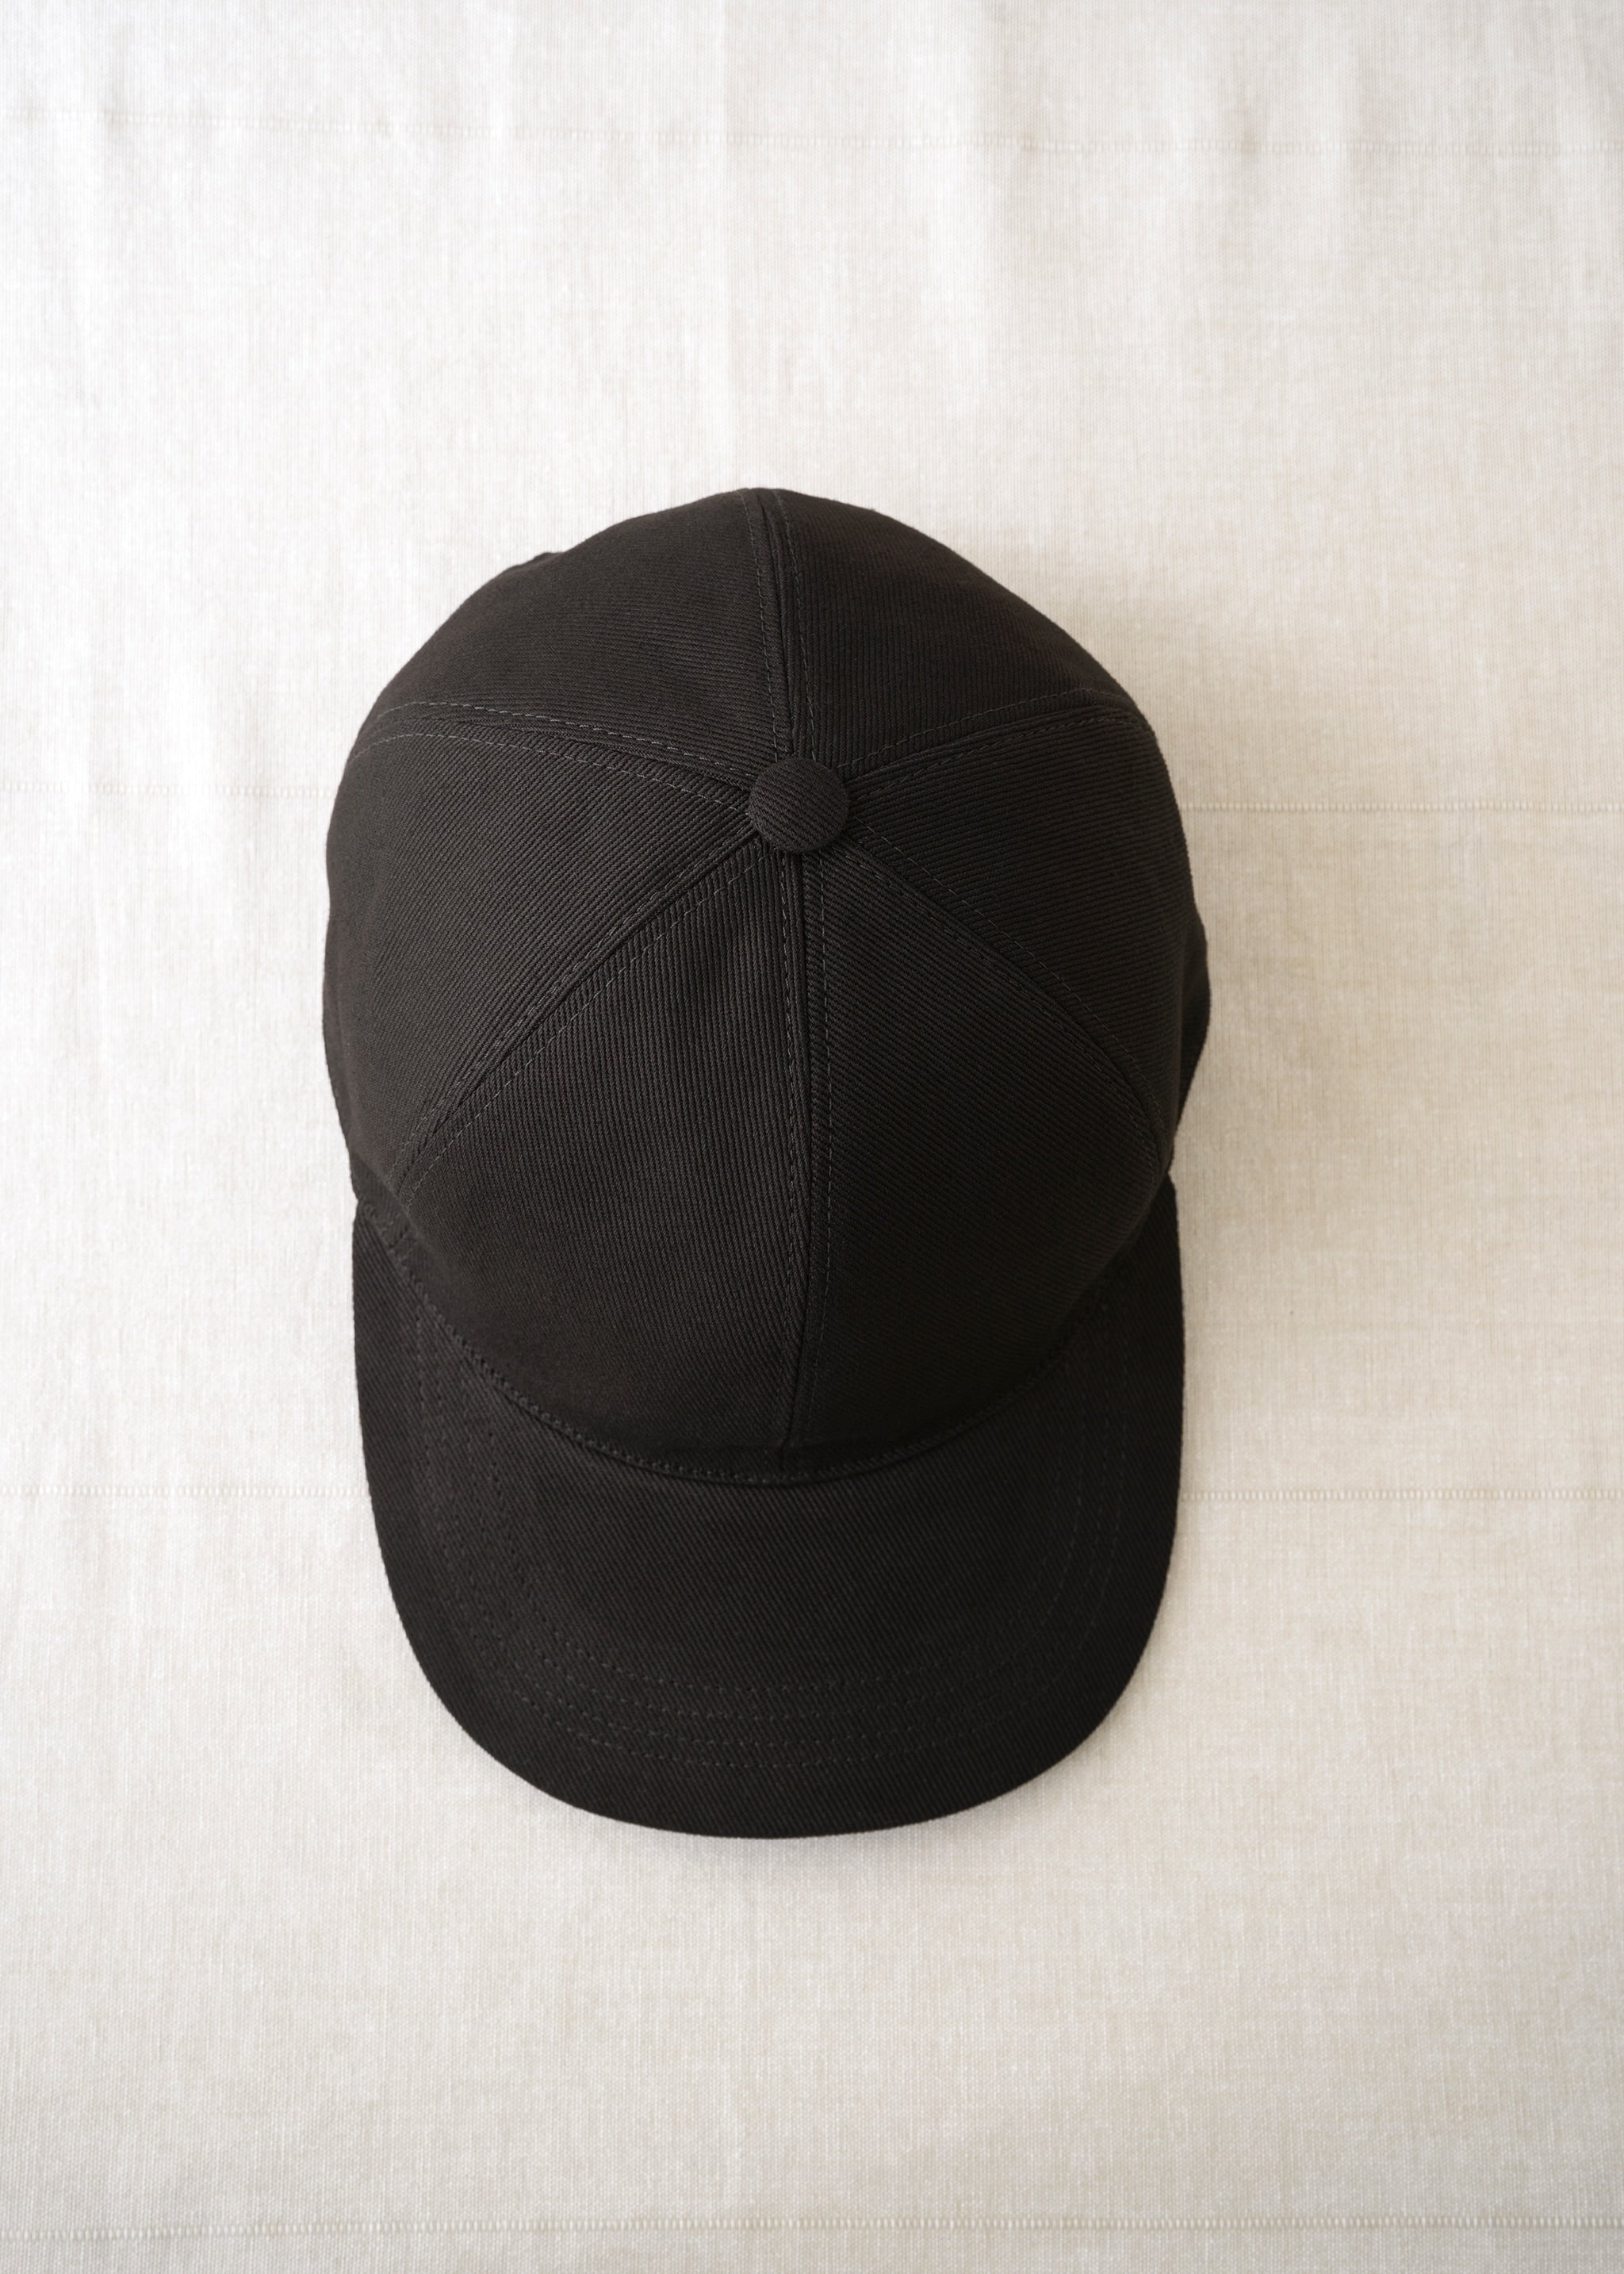 Yacaia - Y-0001 Baseball Cap - Black (Cotton twill)